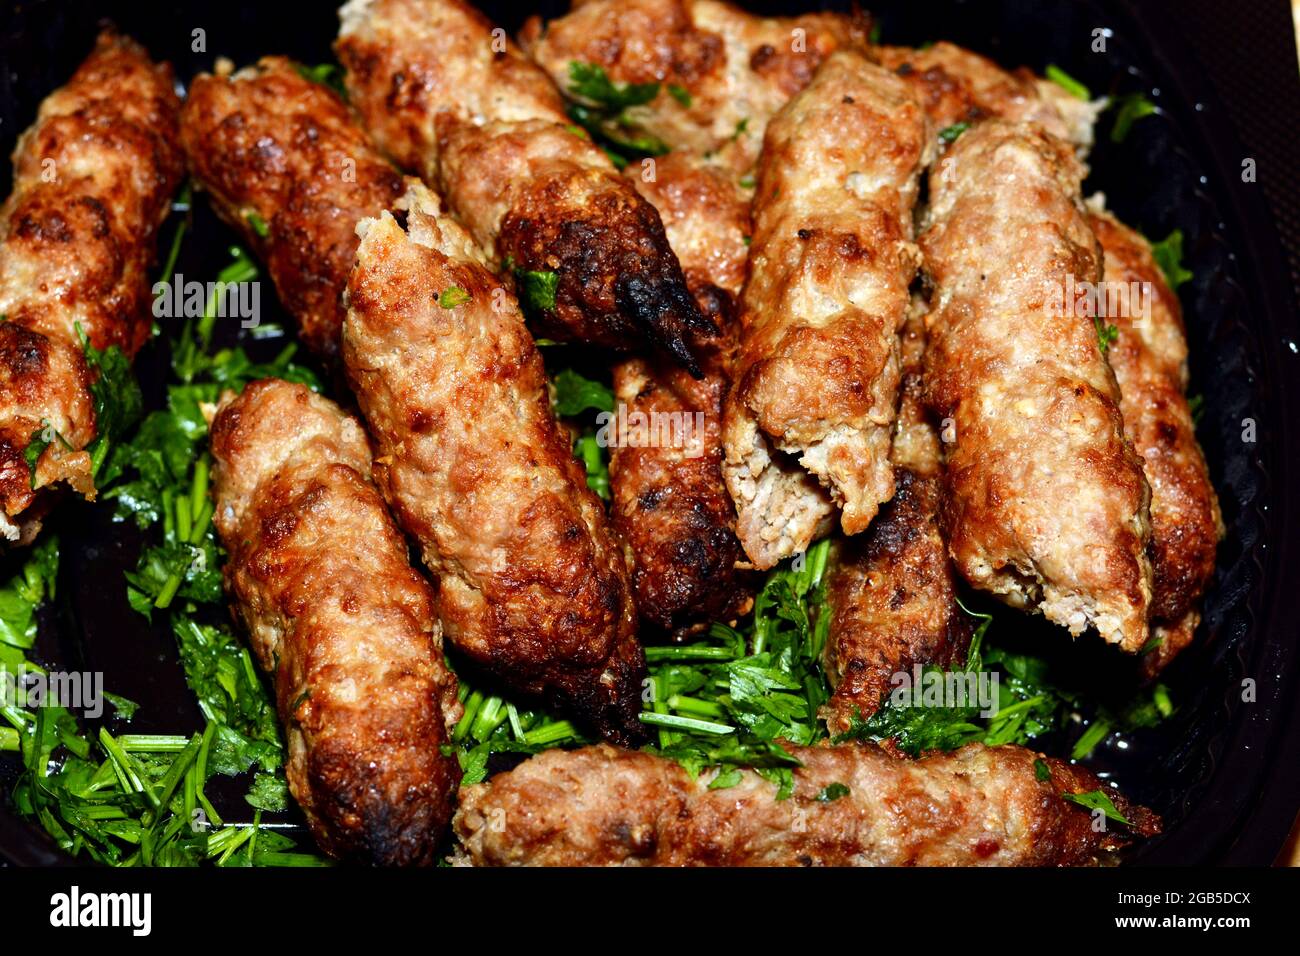 Cucina araba tradizionale cibo di manzo Kofta e carbone kebab alla griglia con prezzemolo verde su di esso, orientale grigliato cibo alla griglia Foto Stock